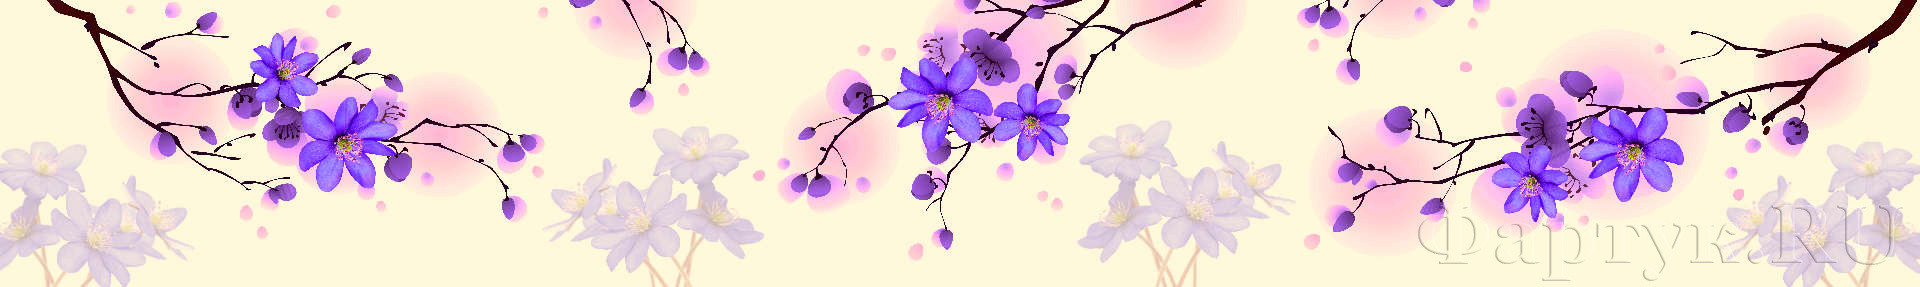 Веточки деревьев с лиловыми цветами 